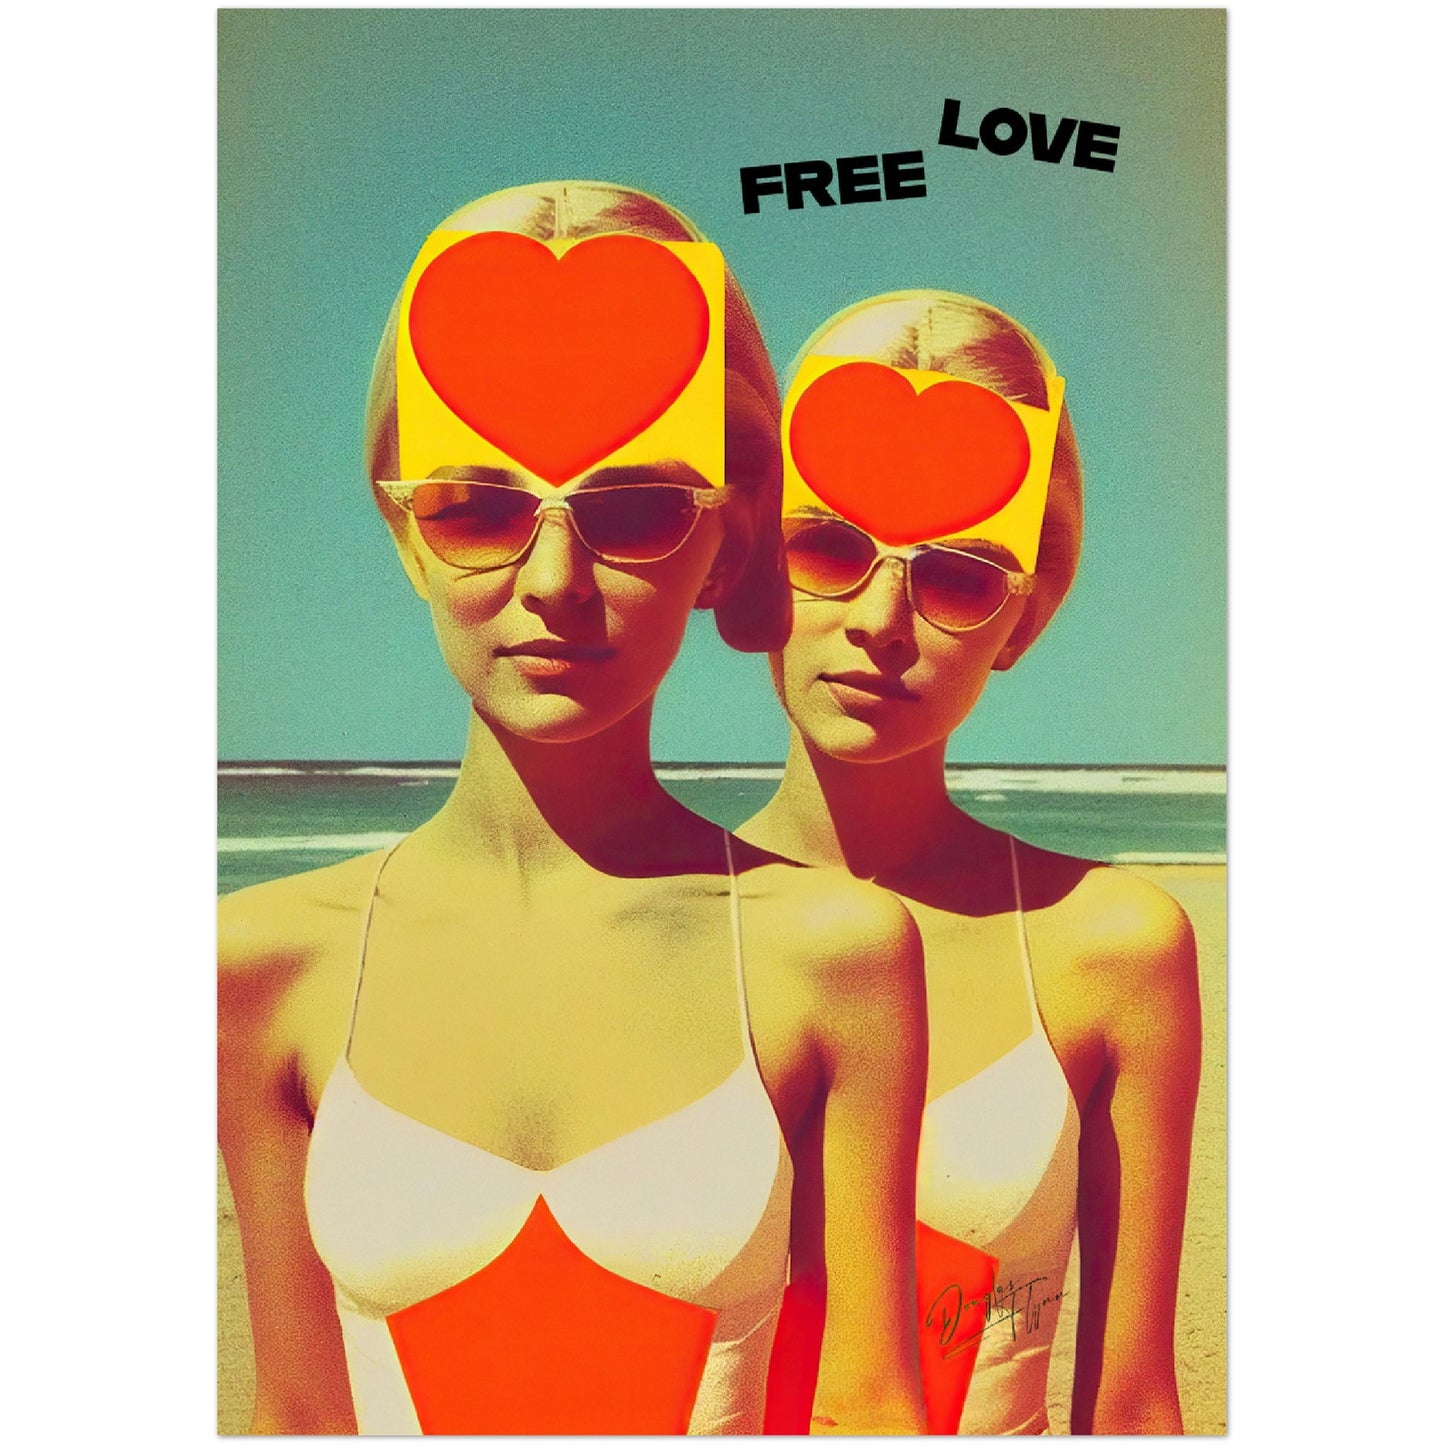 »Free Love«retro poster